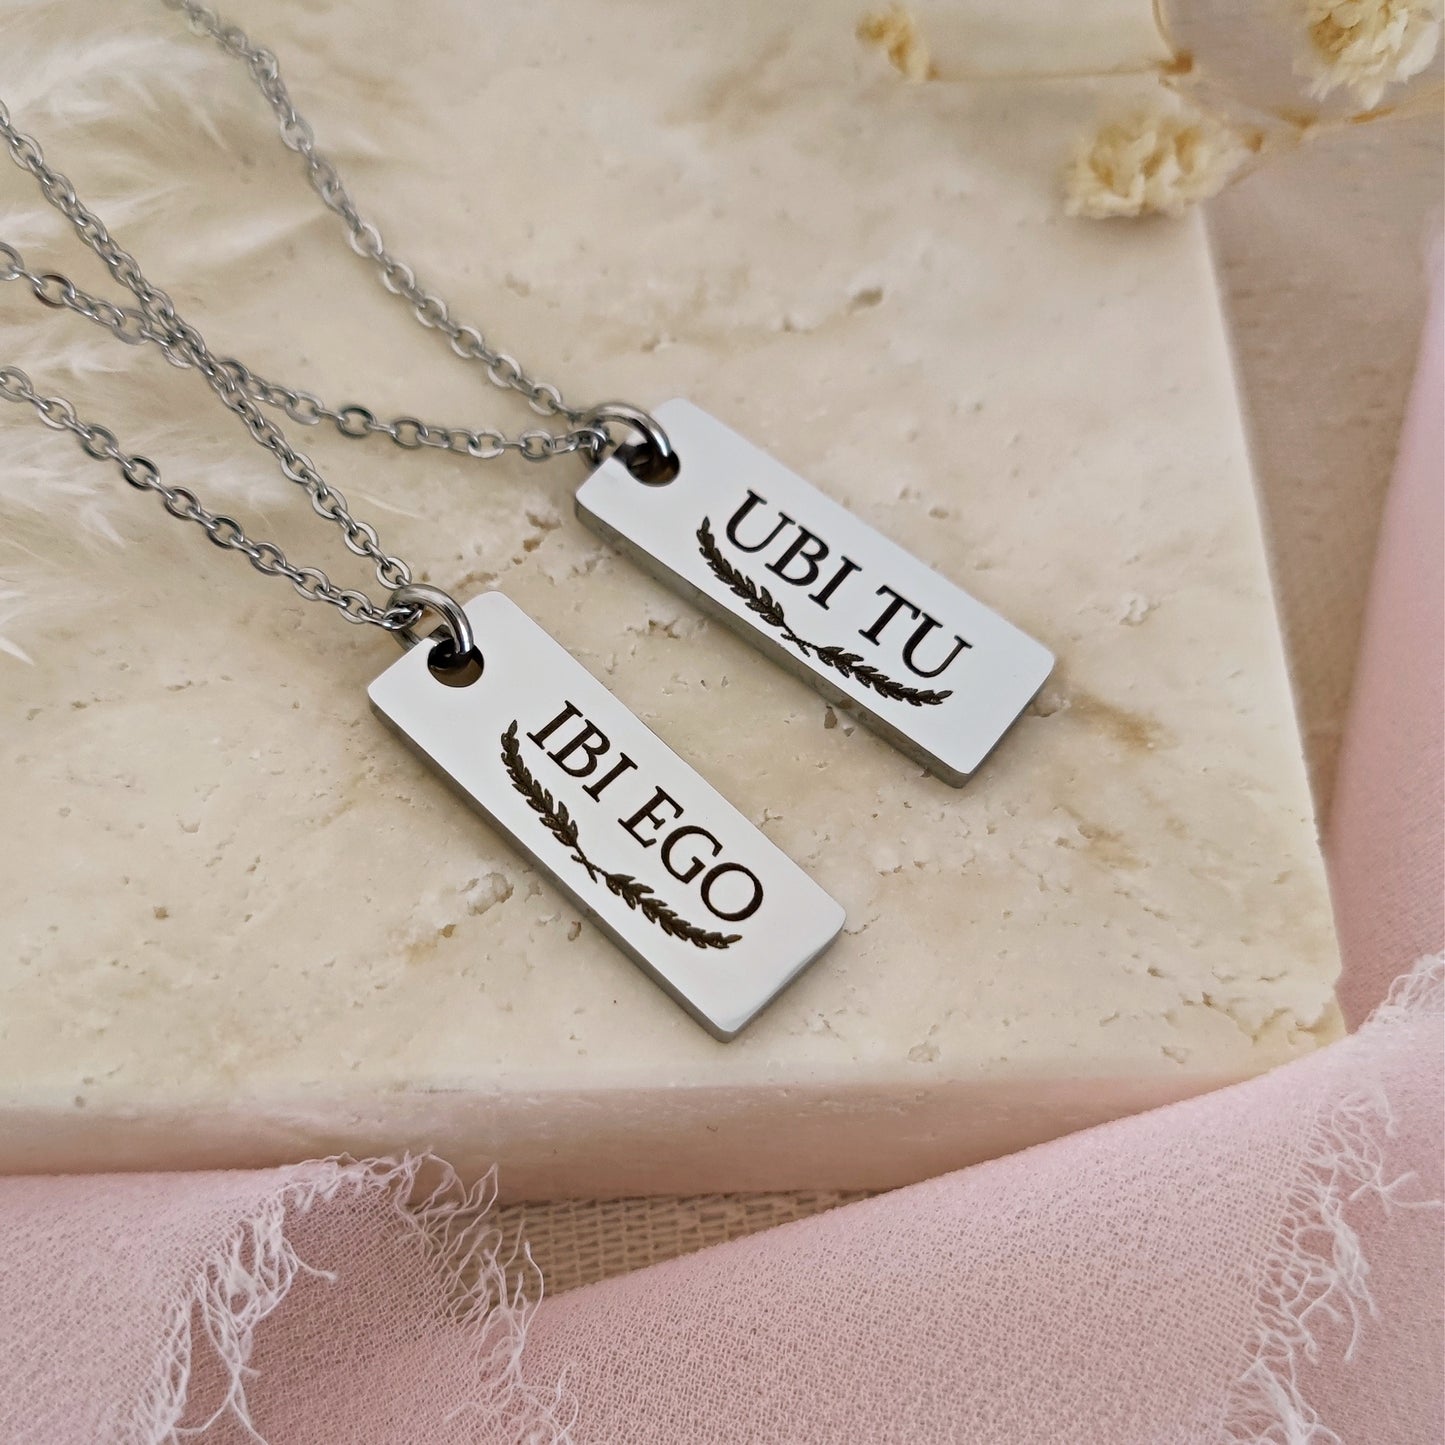 "Ubi tu, Ibi Ego" necklaces with engraving